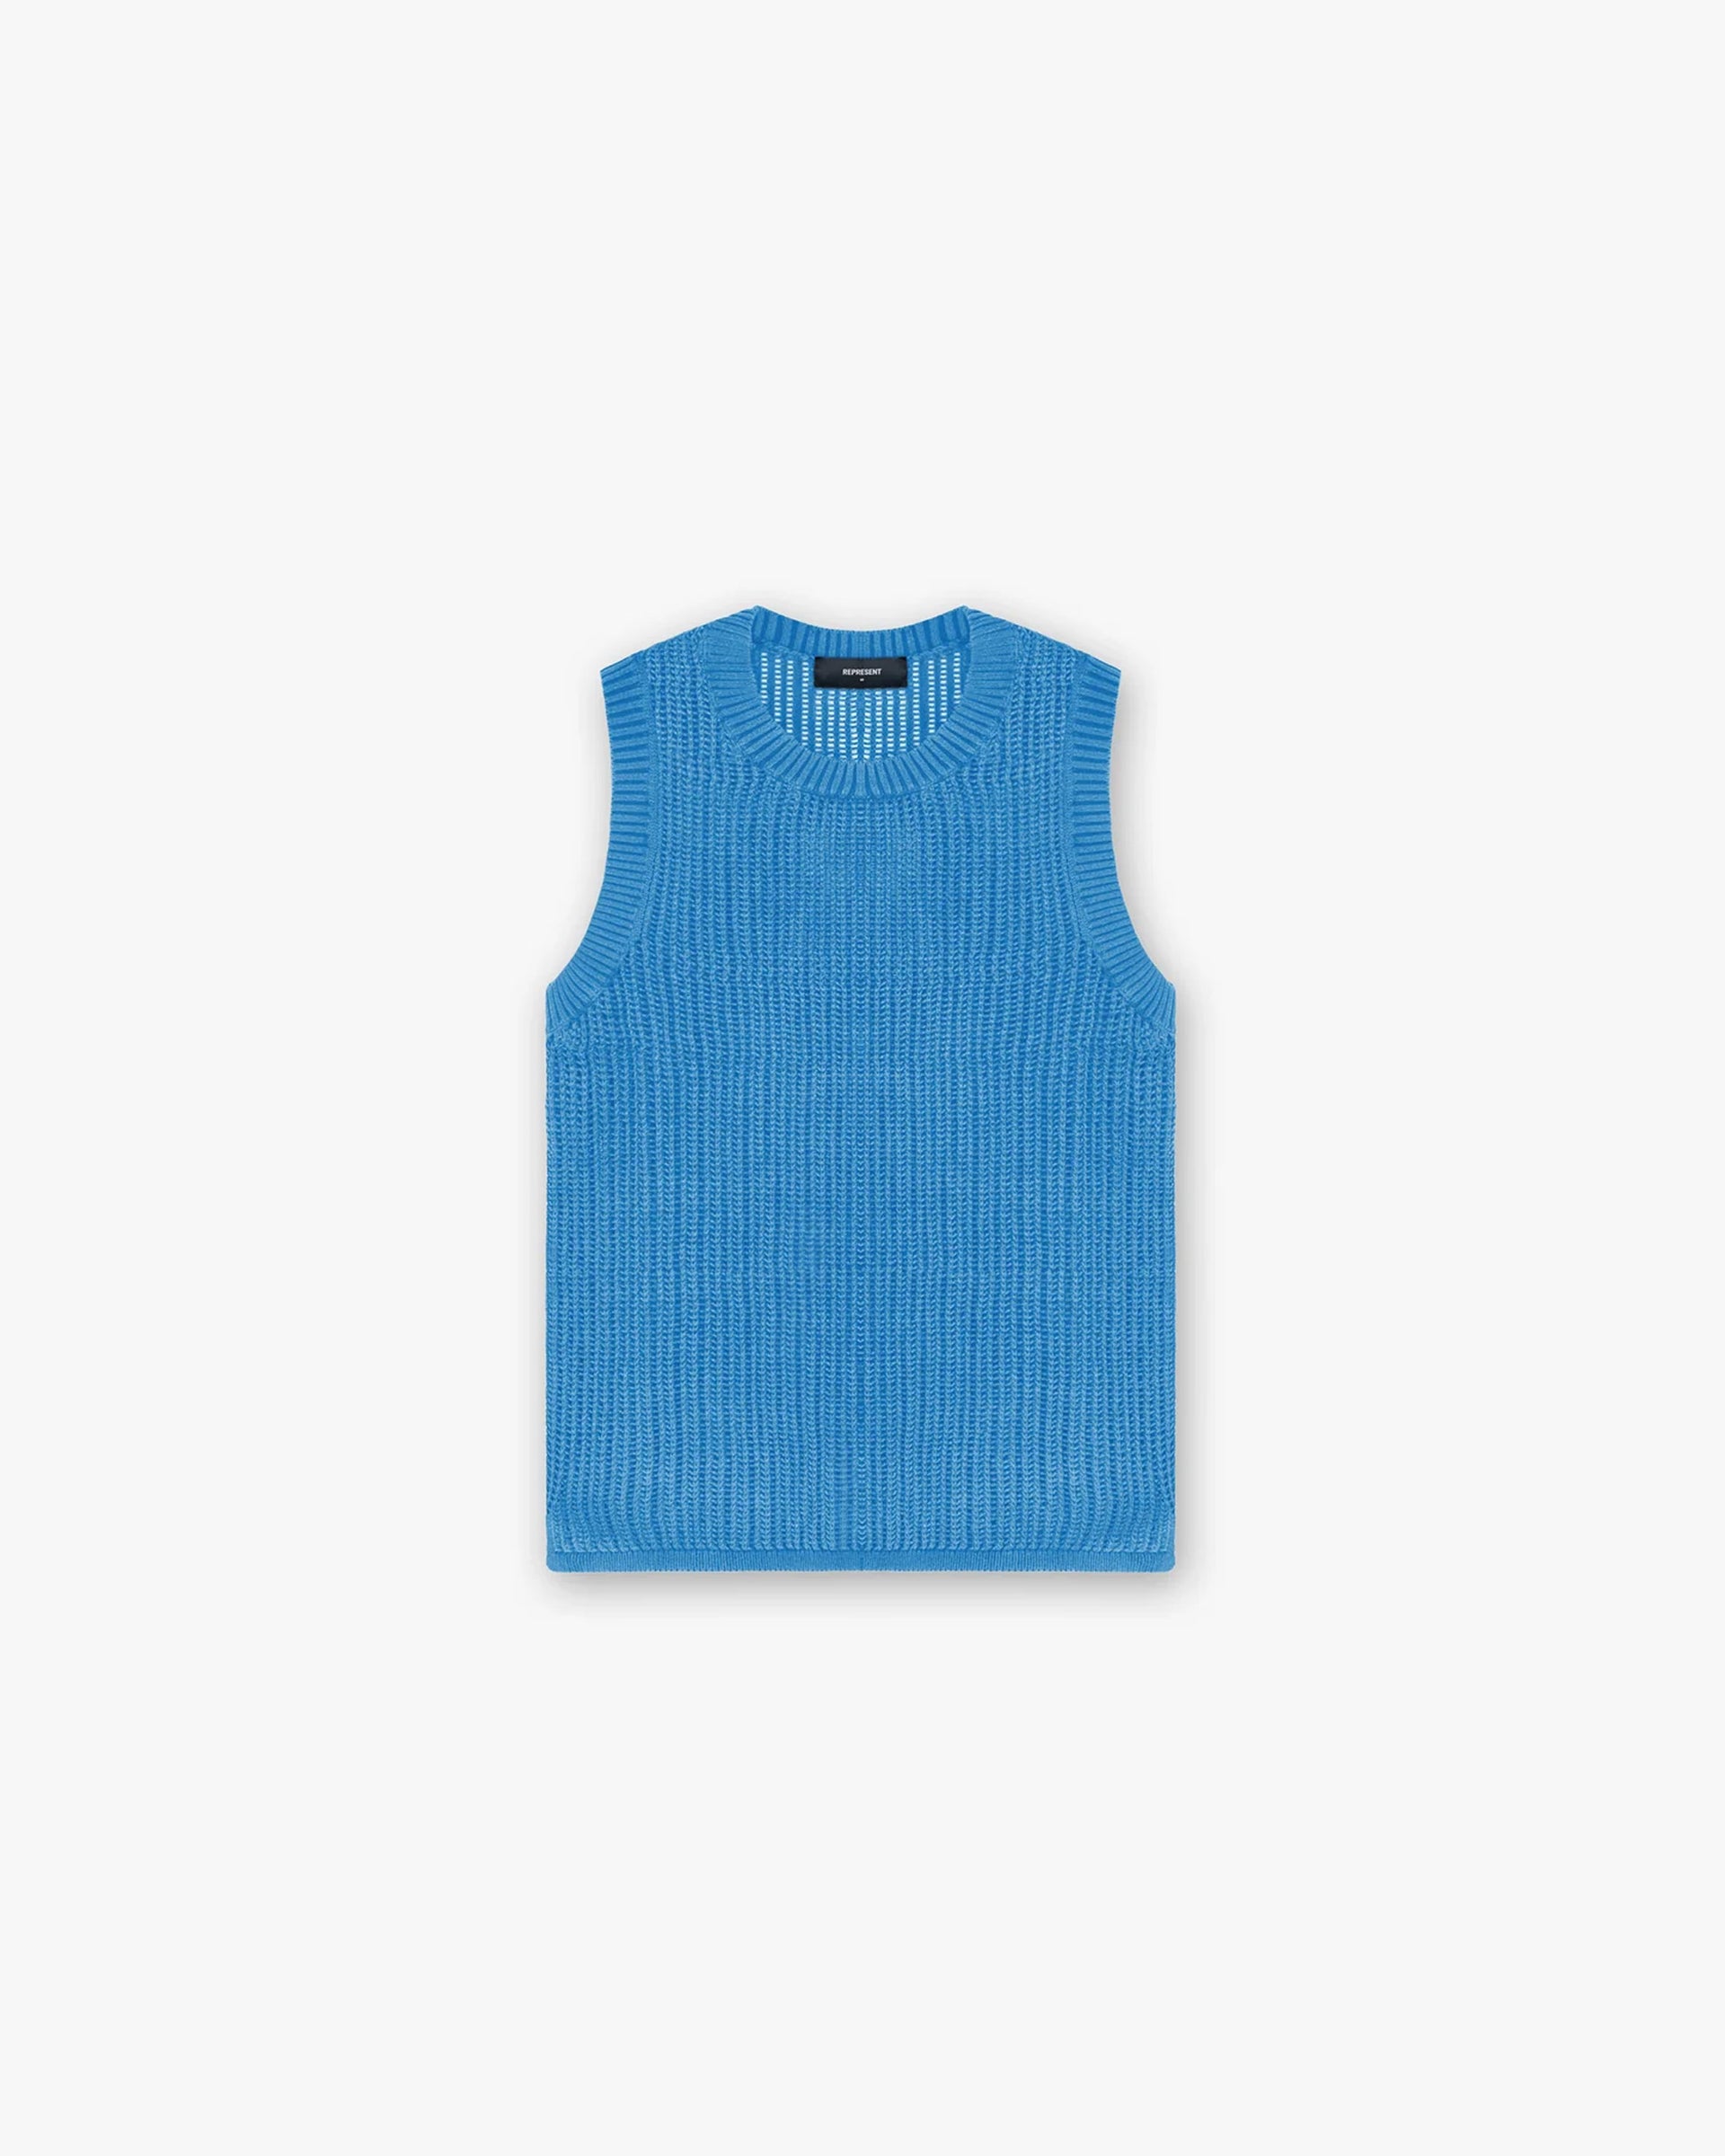 Knitted Tank | Cobalt Knitwear SC23 | Represent Clo